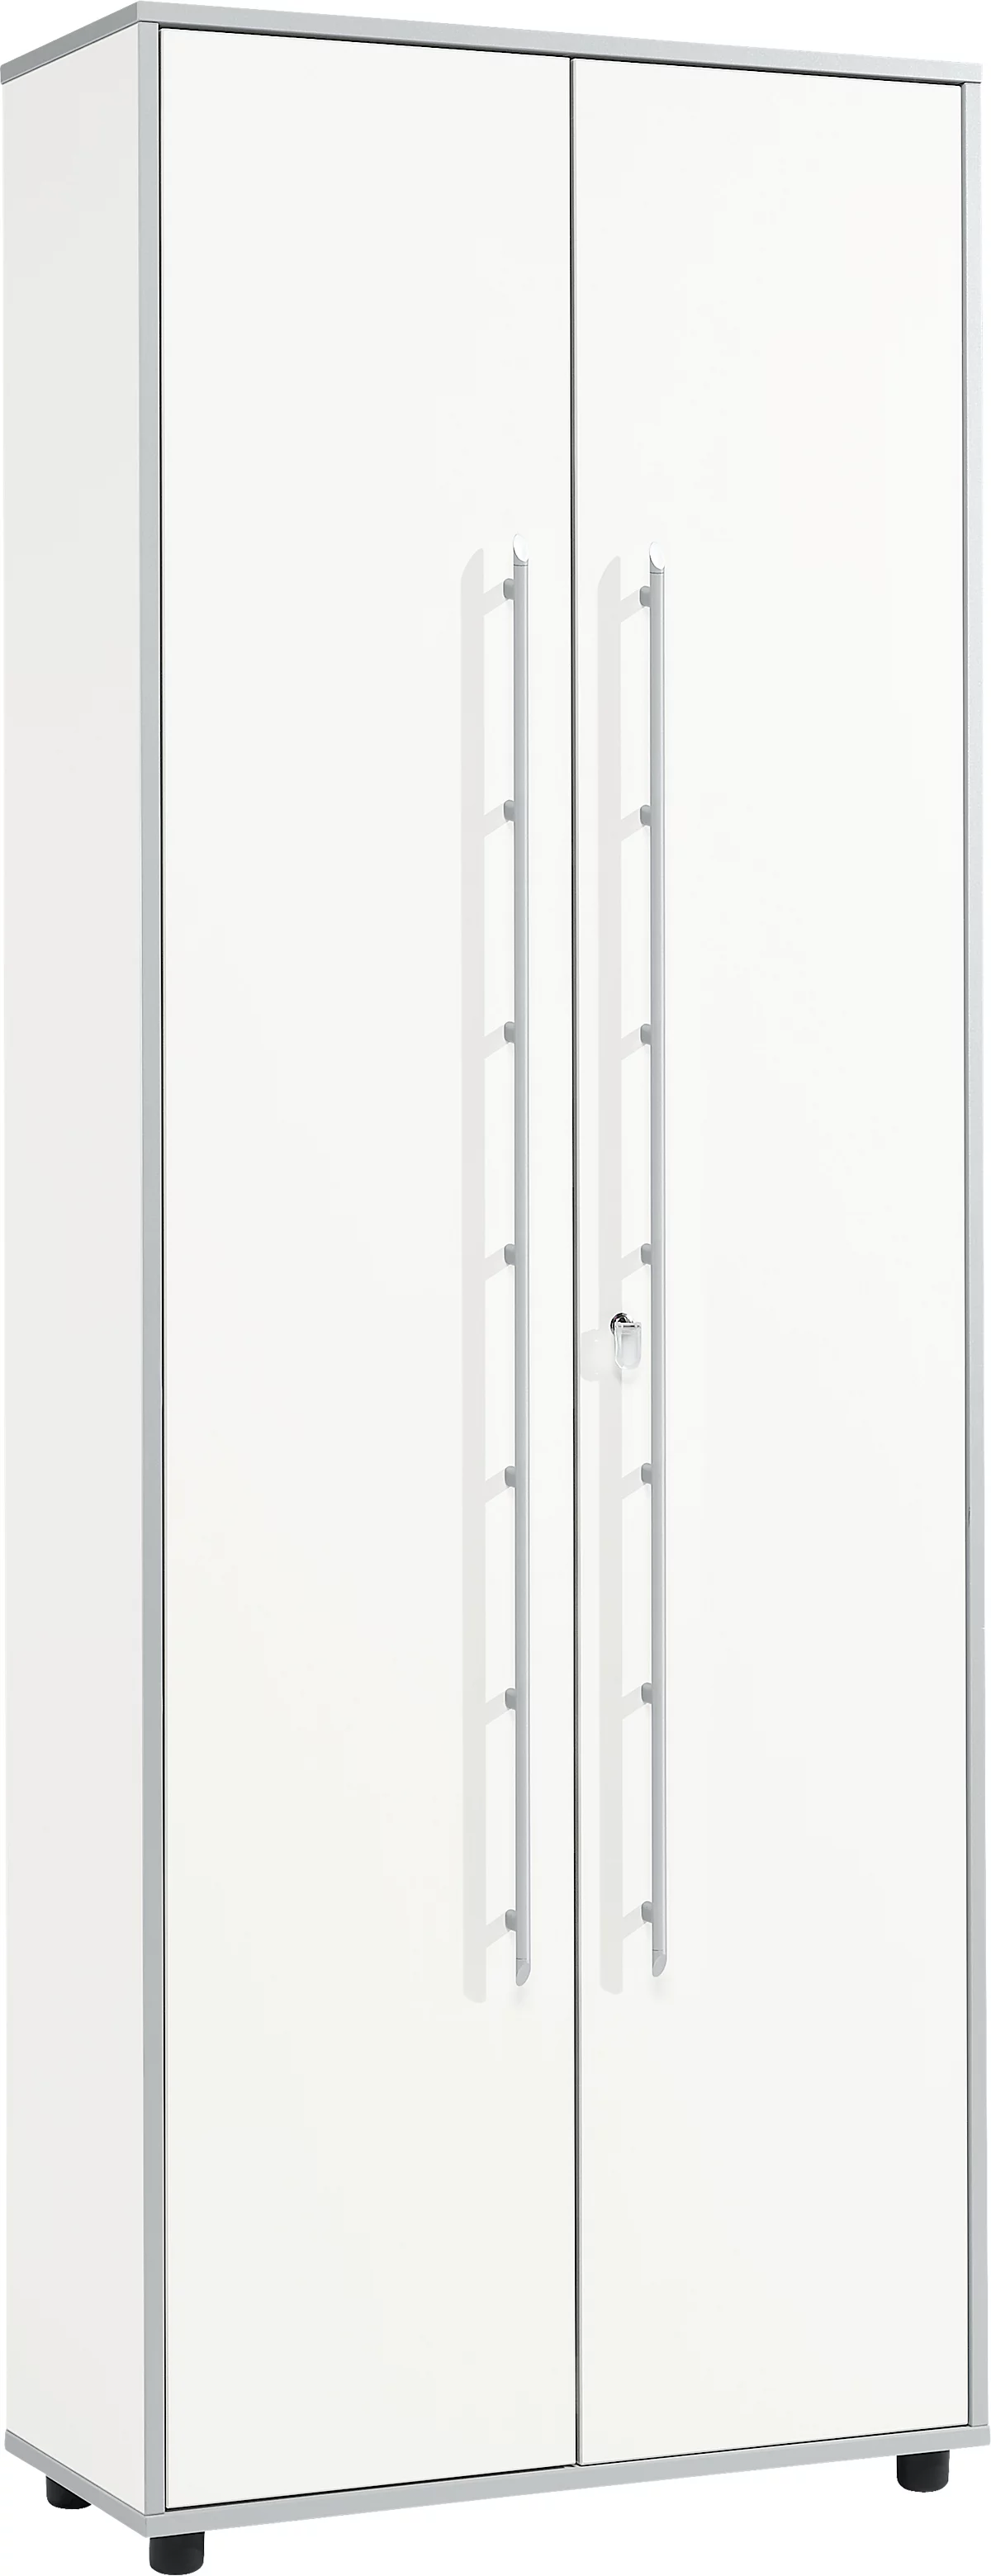 Schäfer Shop Select Aktenschrank Moxxo IQ, Holz, 5 Böden, 6 OH, B 801 x T 362 x H 2166 mm, abschließbar, weiß